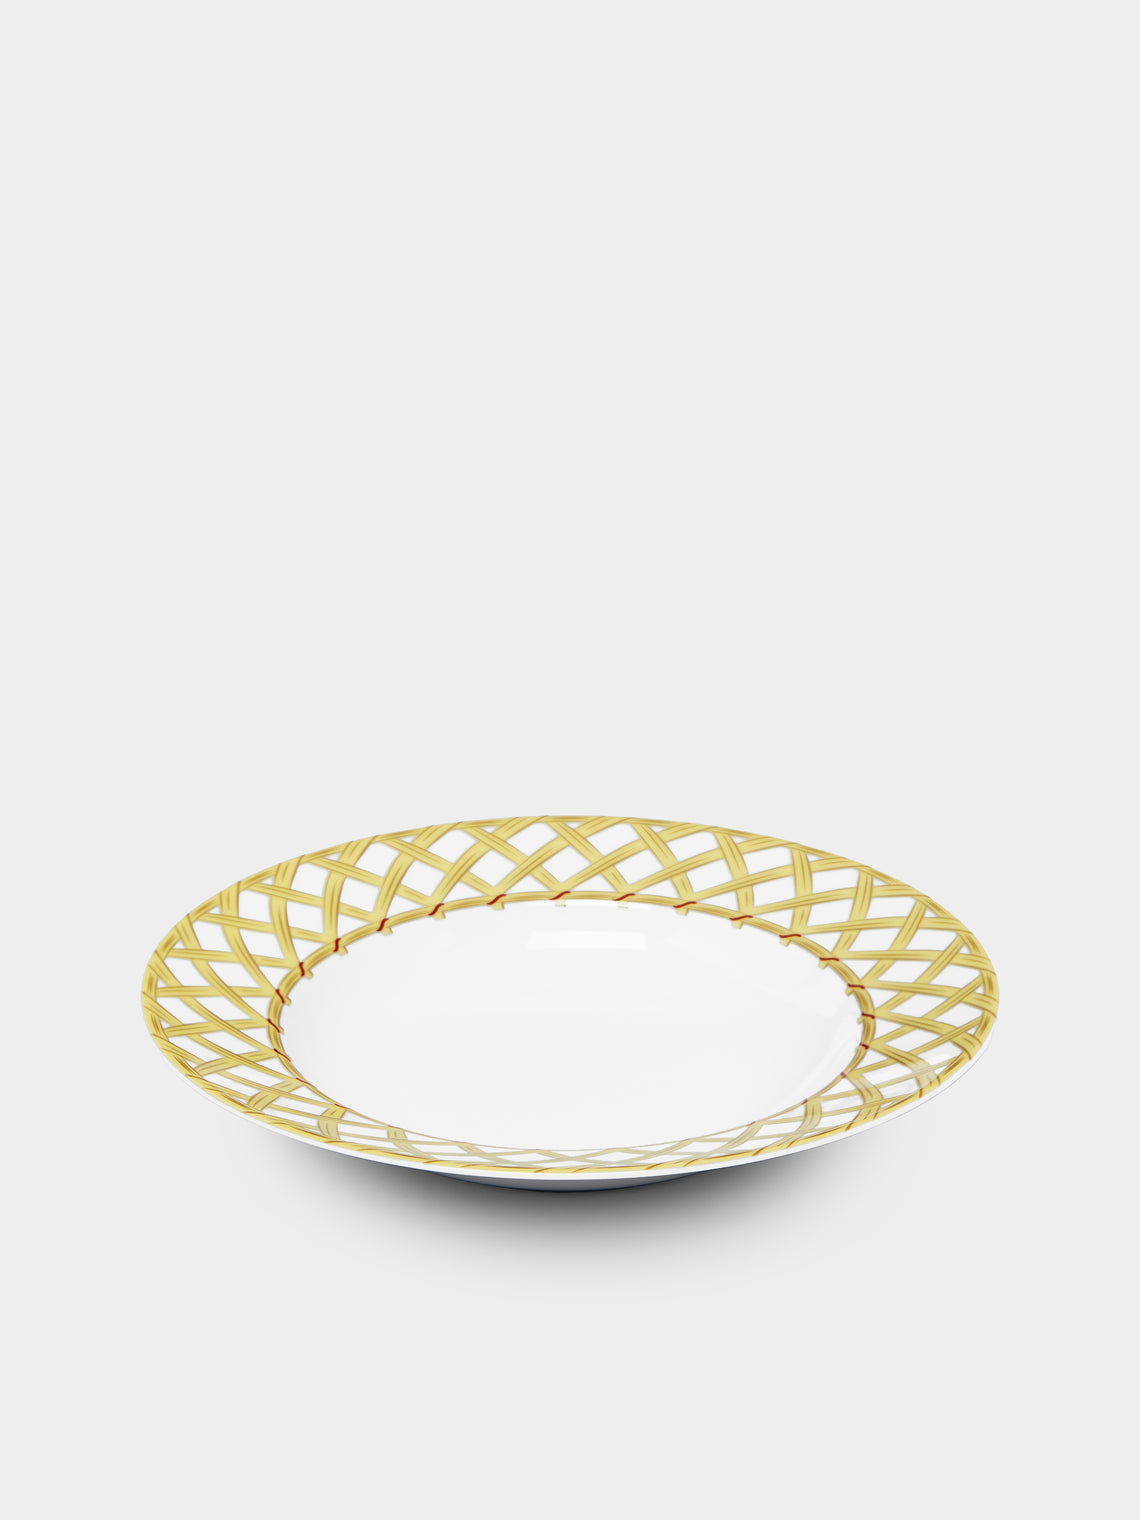 Pinto Paris - Vannerie Cottage Porcelain Soup Plate -  - ABASK - 